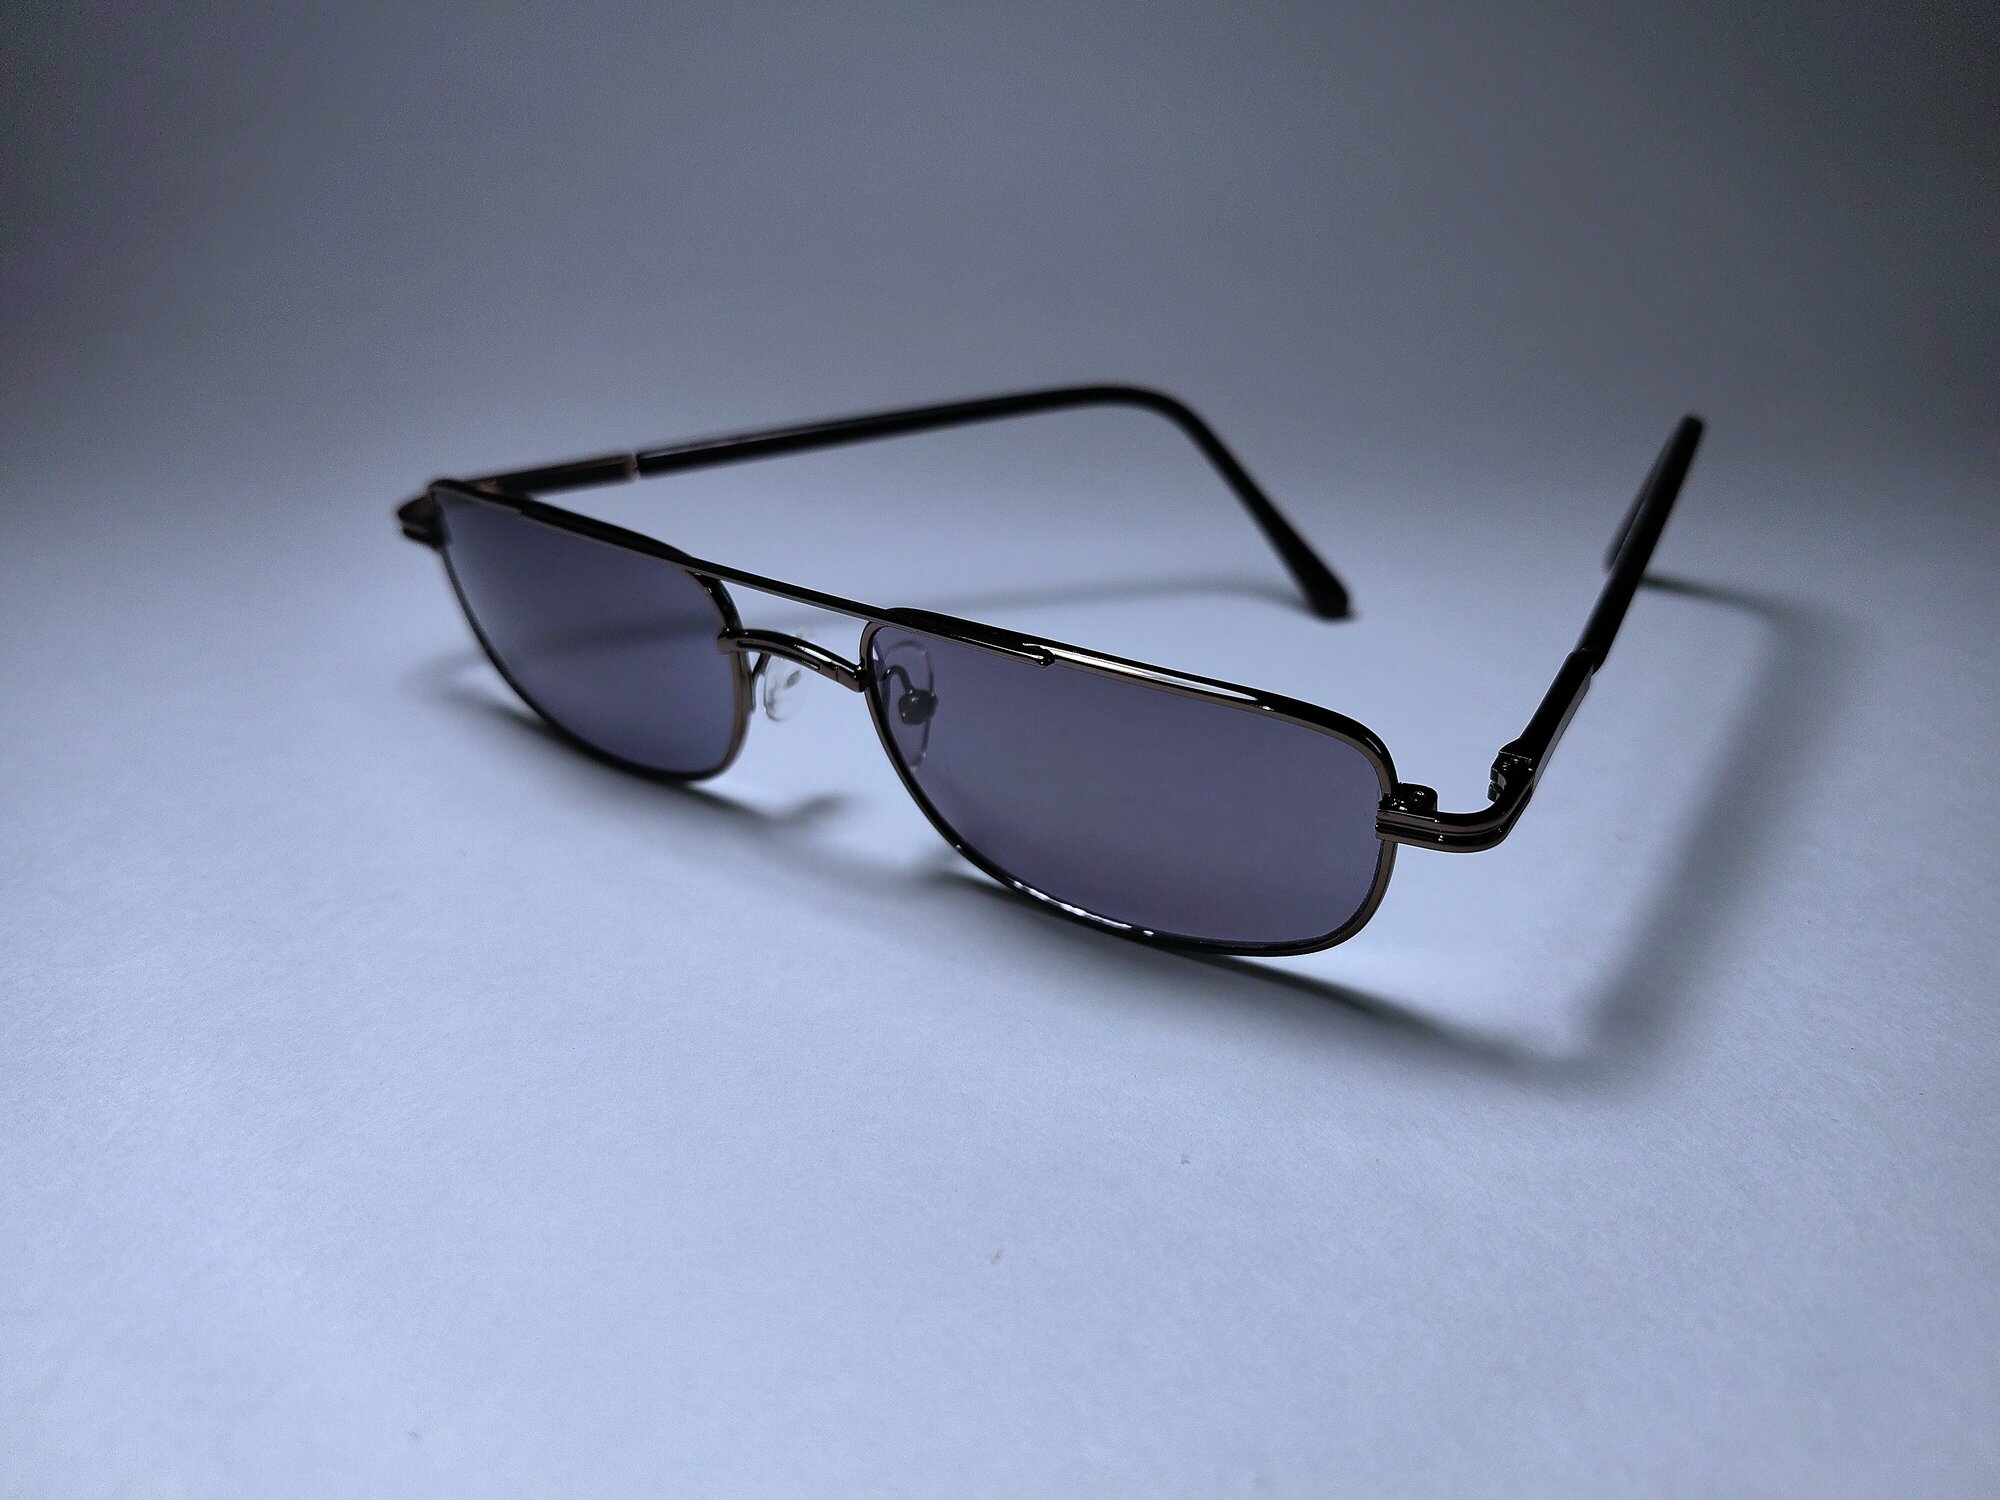 Готовые очки для зрения, стекло +2,00 (хамелеон) с фотохромными линзами, 62-64мм, очки для чтения, очки с диоптриями женские, мужские, оптика